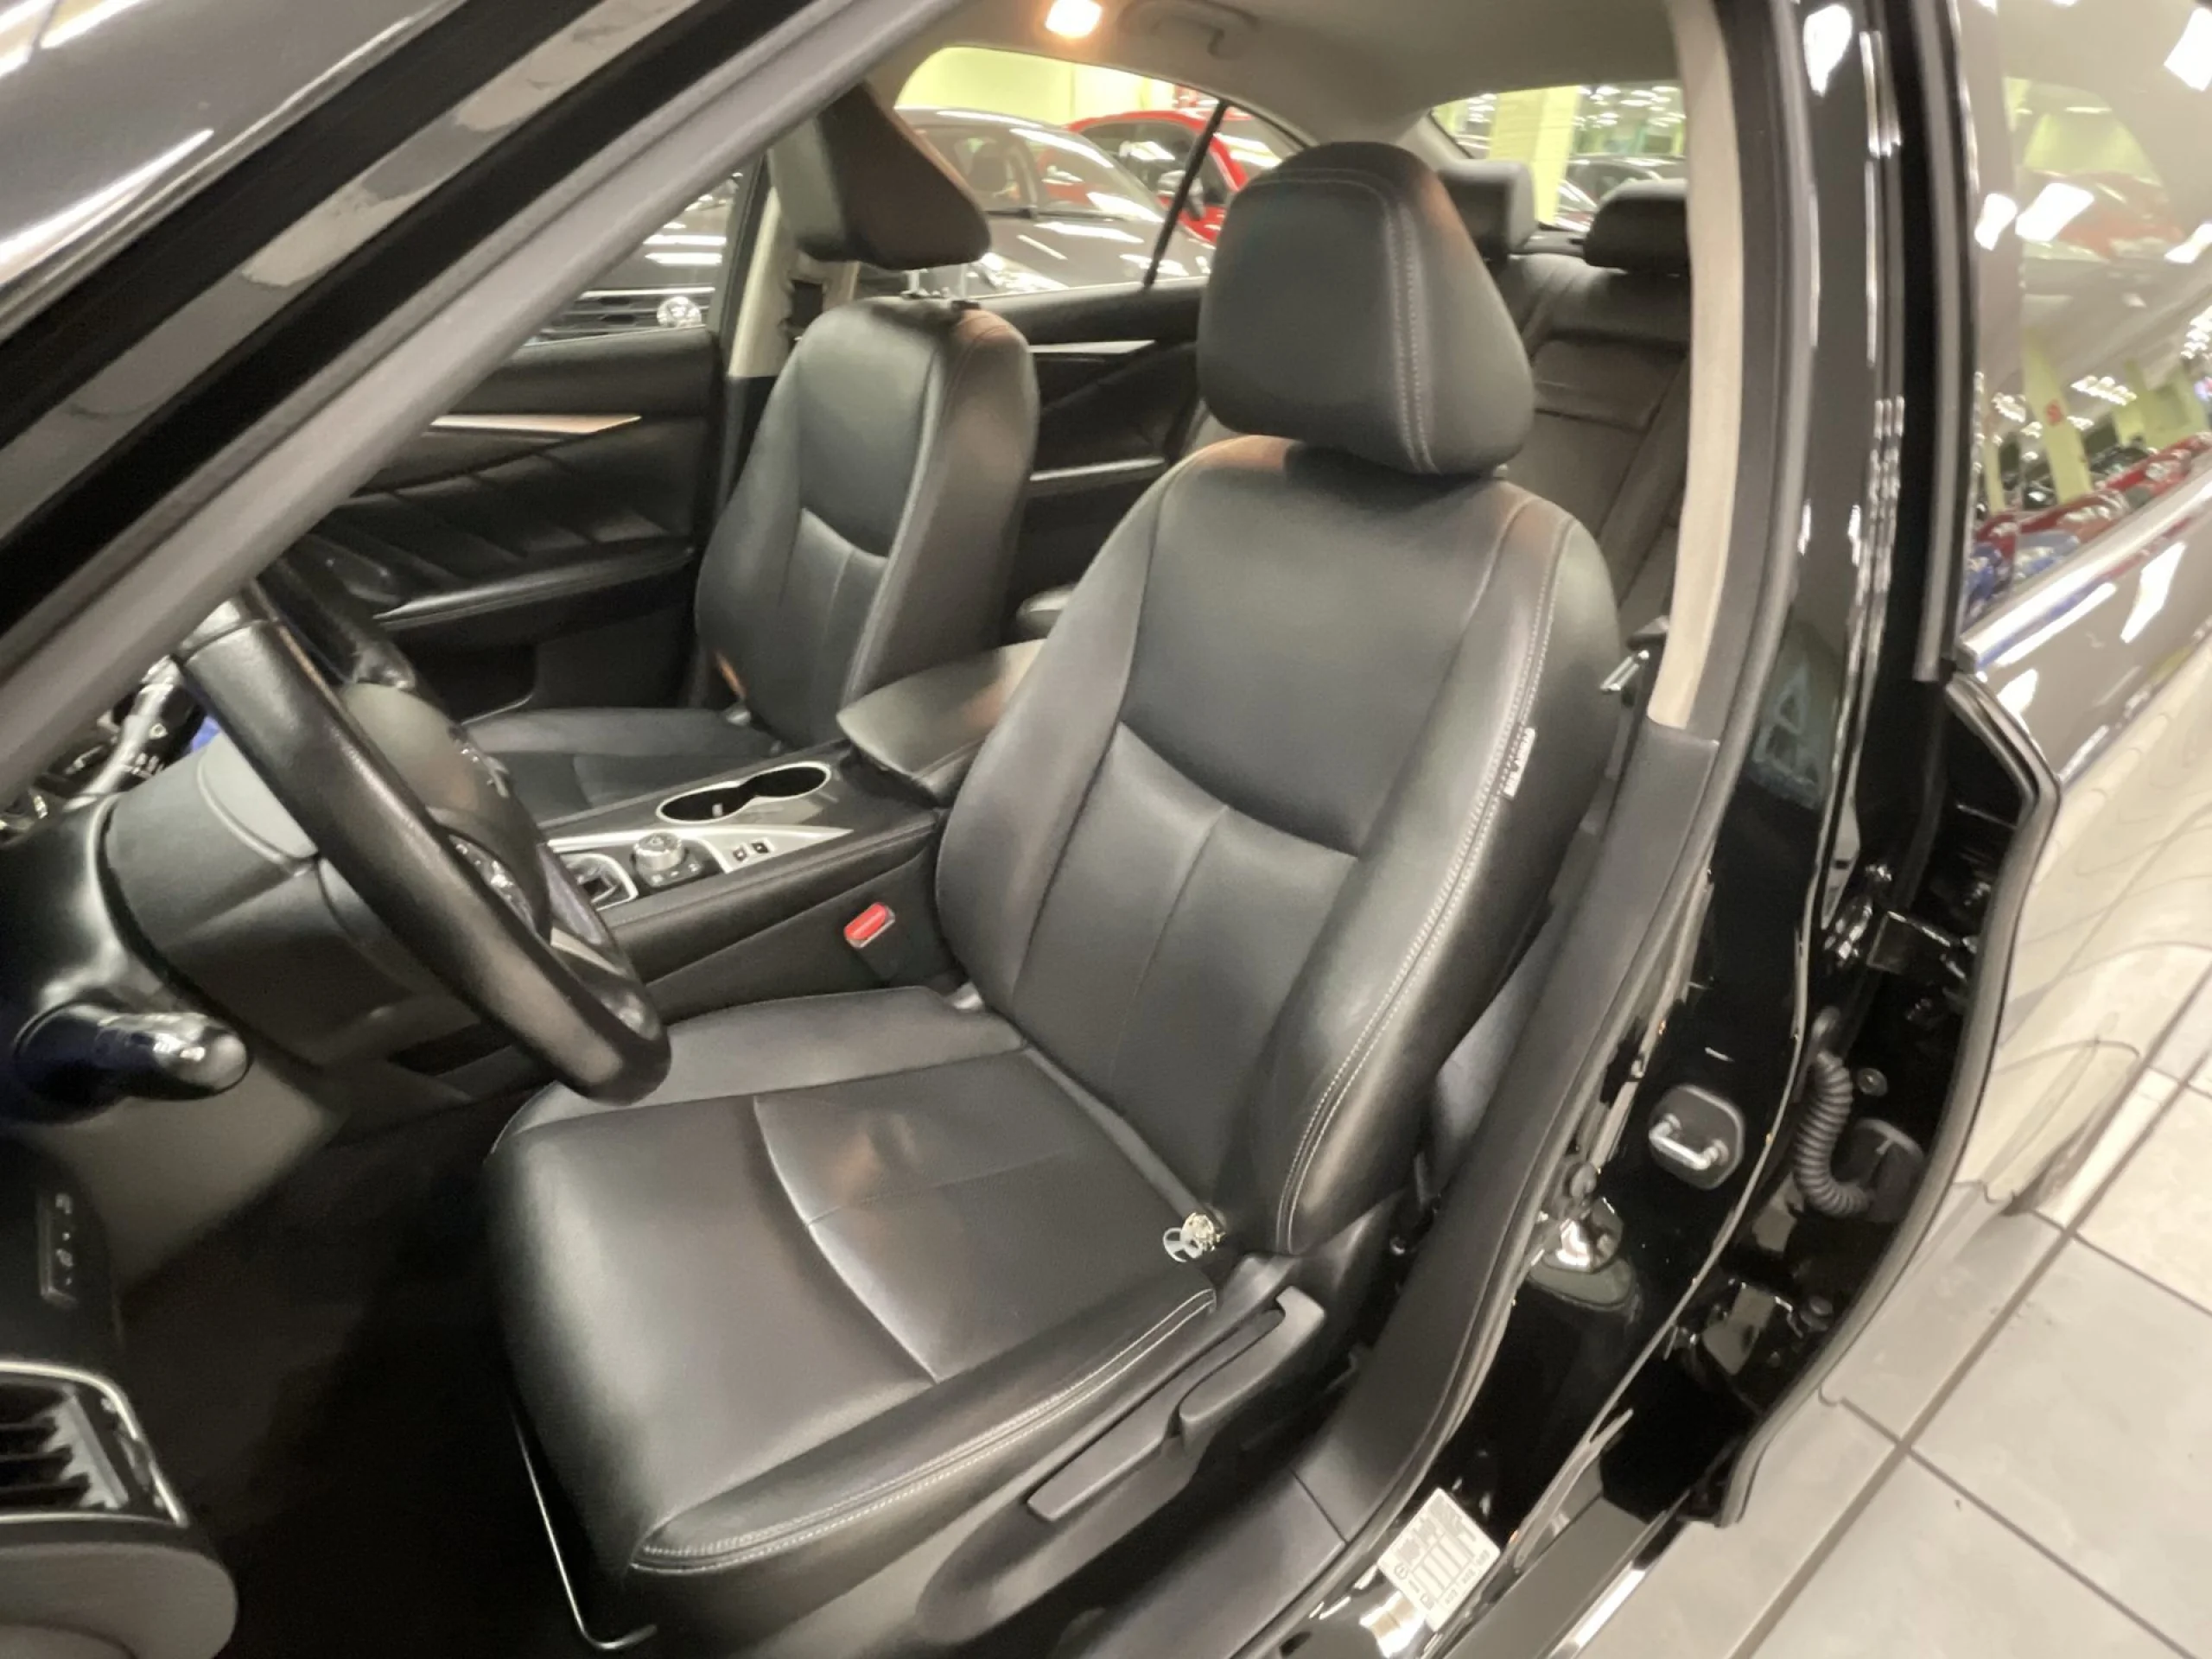 Infiniti Q50 2.2d GT Premium Aut. 7V 125 kW (170 CV) - Foto 8